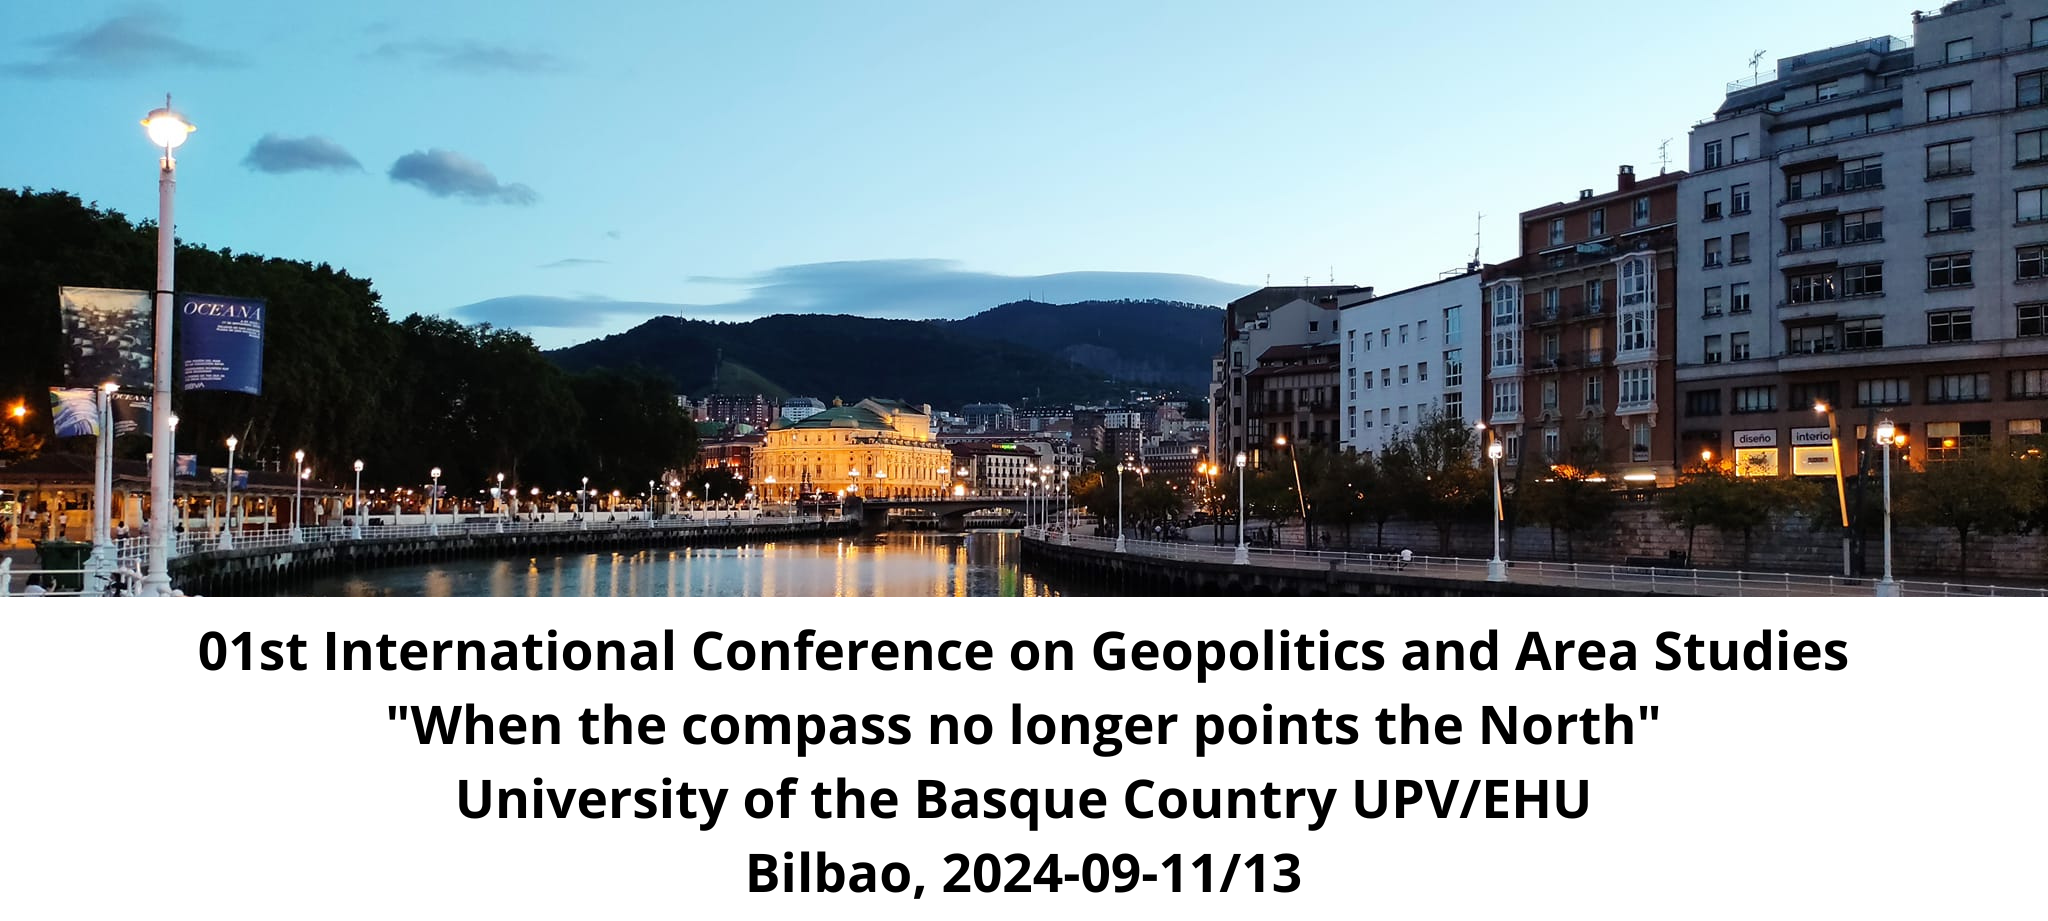 Call for Papers: I Congreso Internacional de Geopolítica y Estudios de Área